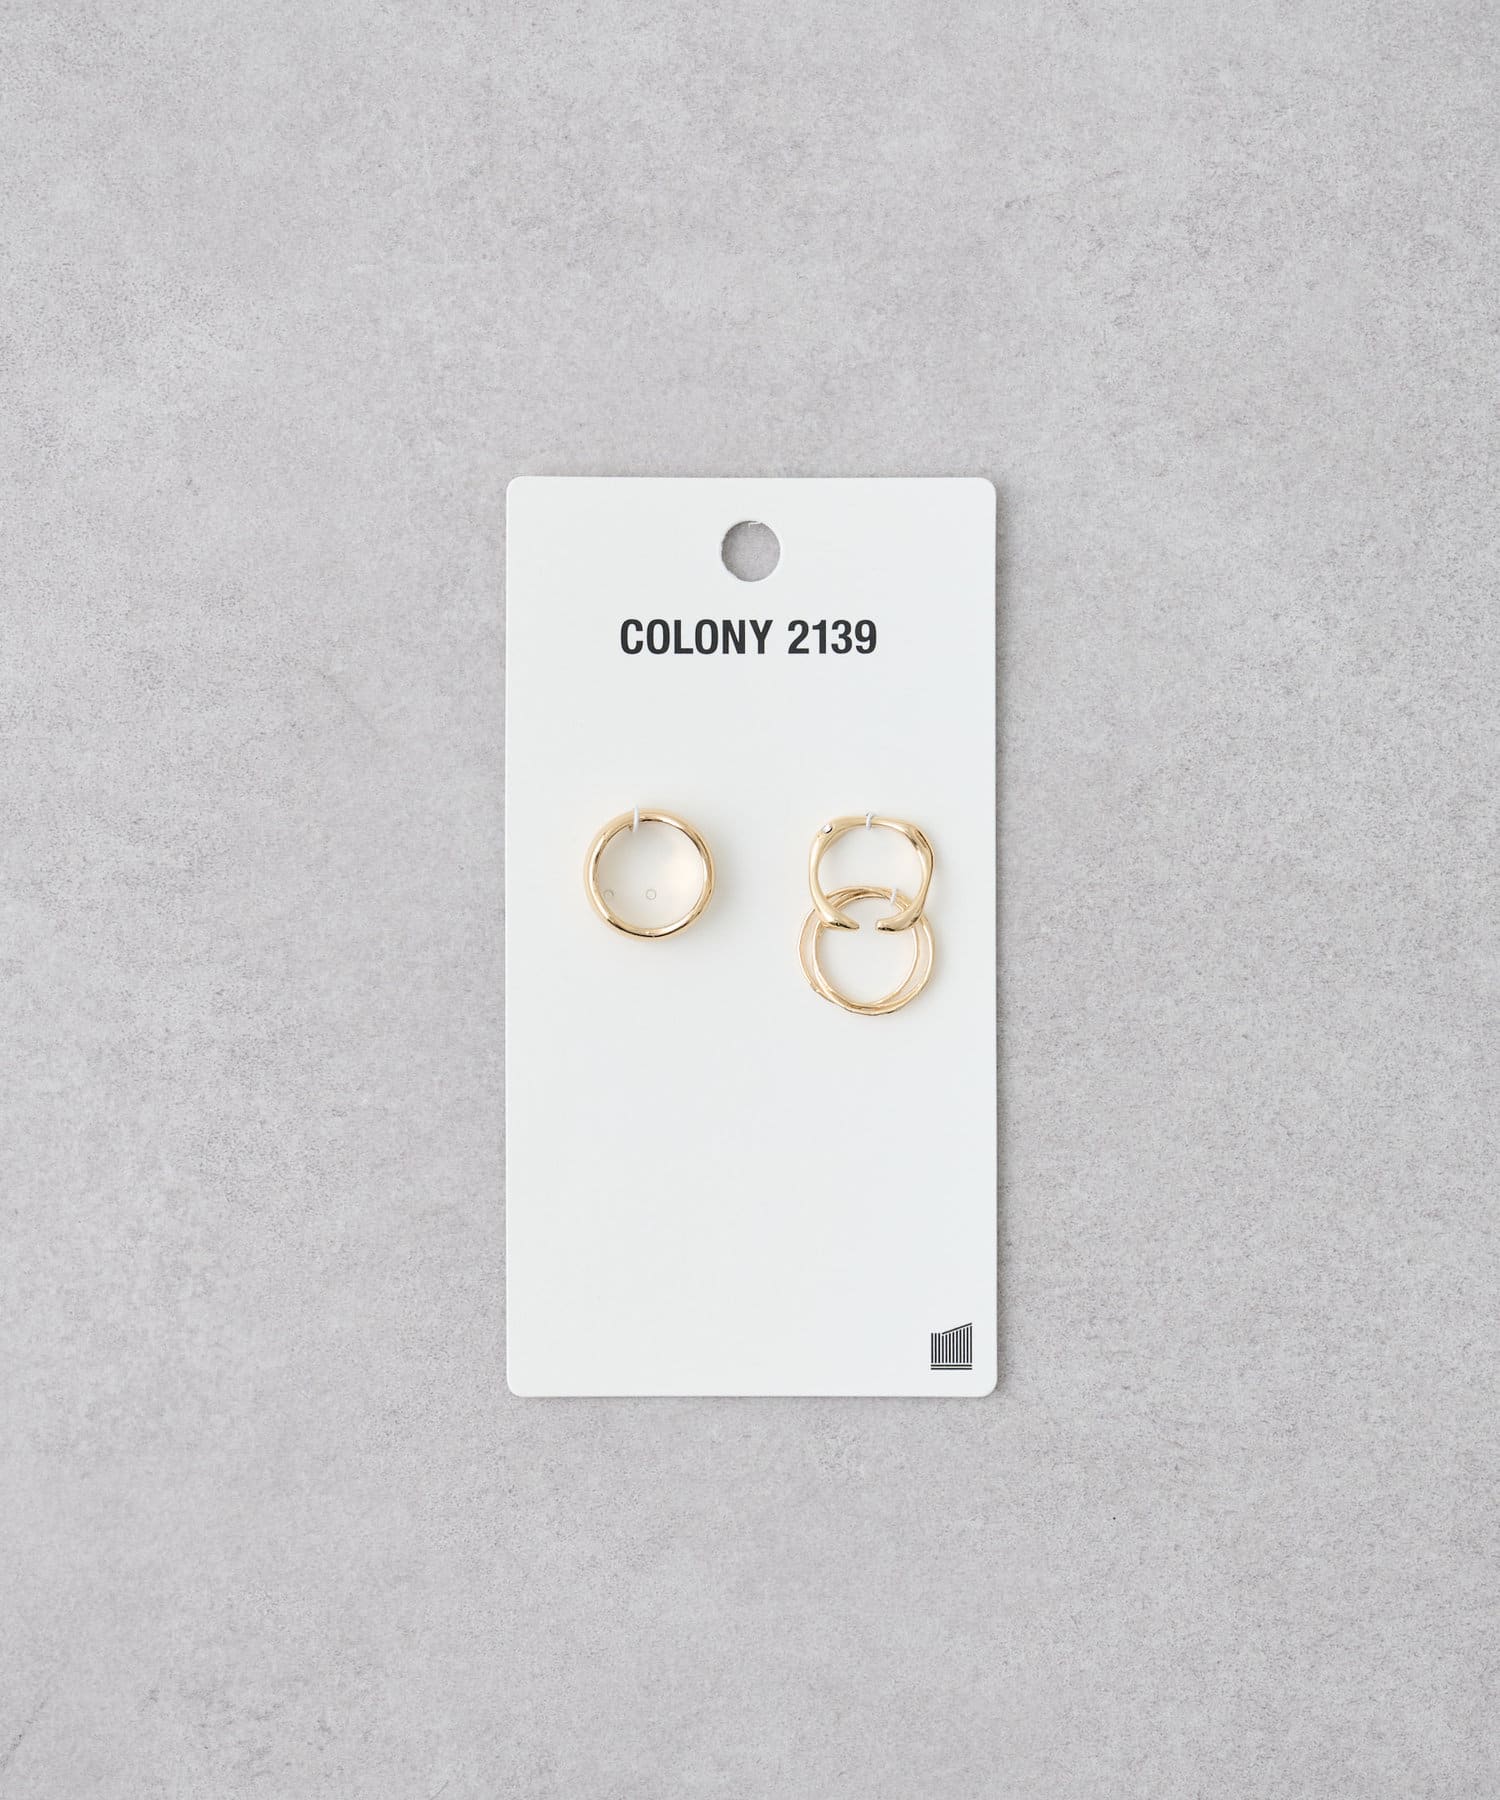 COLONY 2139(コロニー トゥーワンスリーナイン) SETリングC